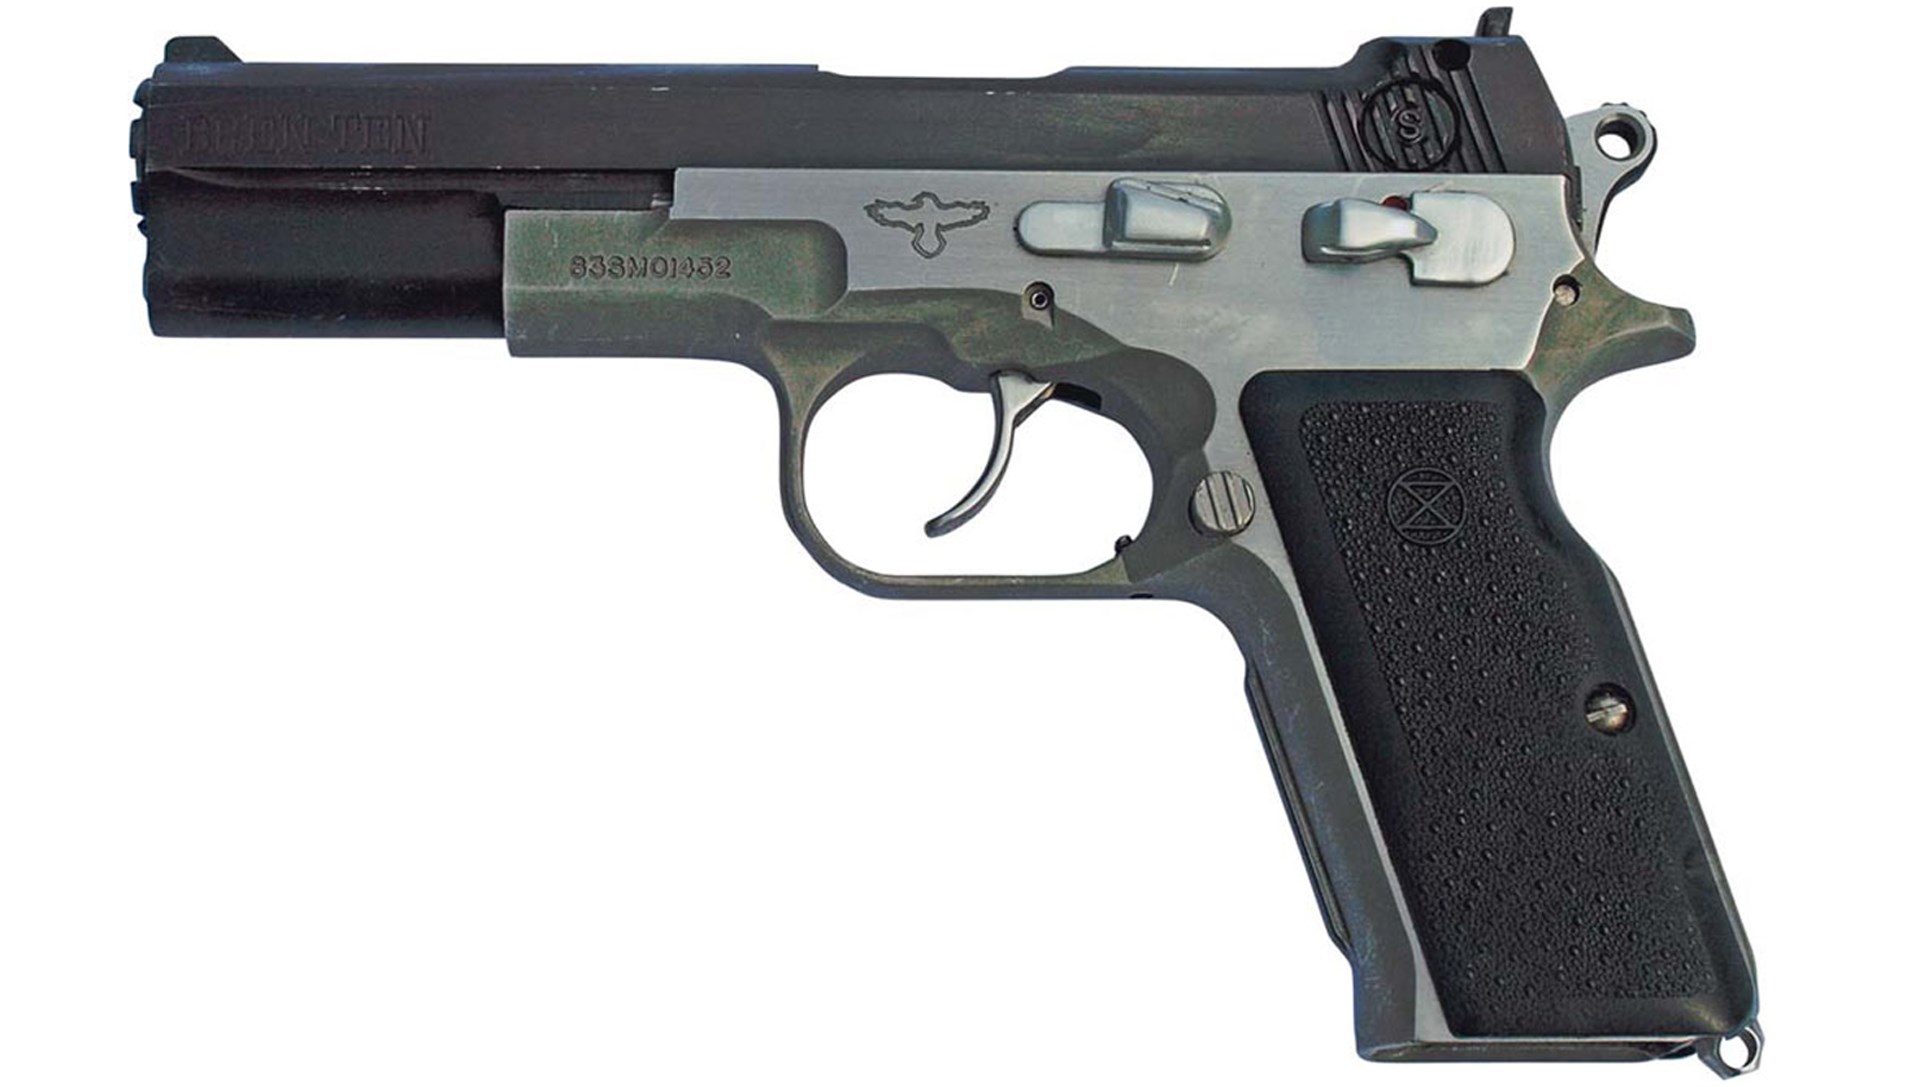 Bren Ten pistol handgun left-side view on white